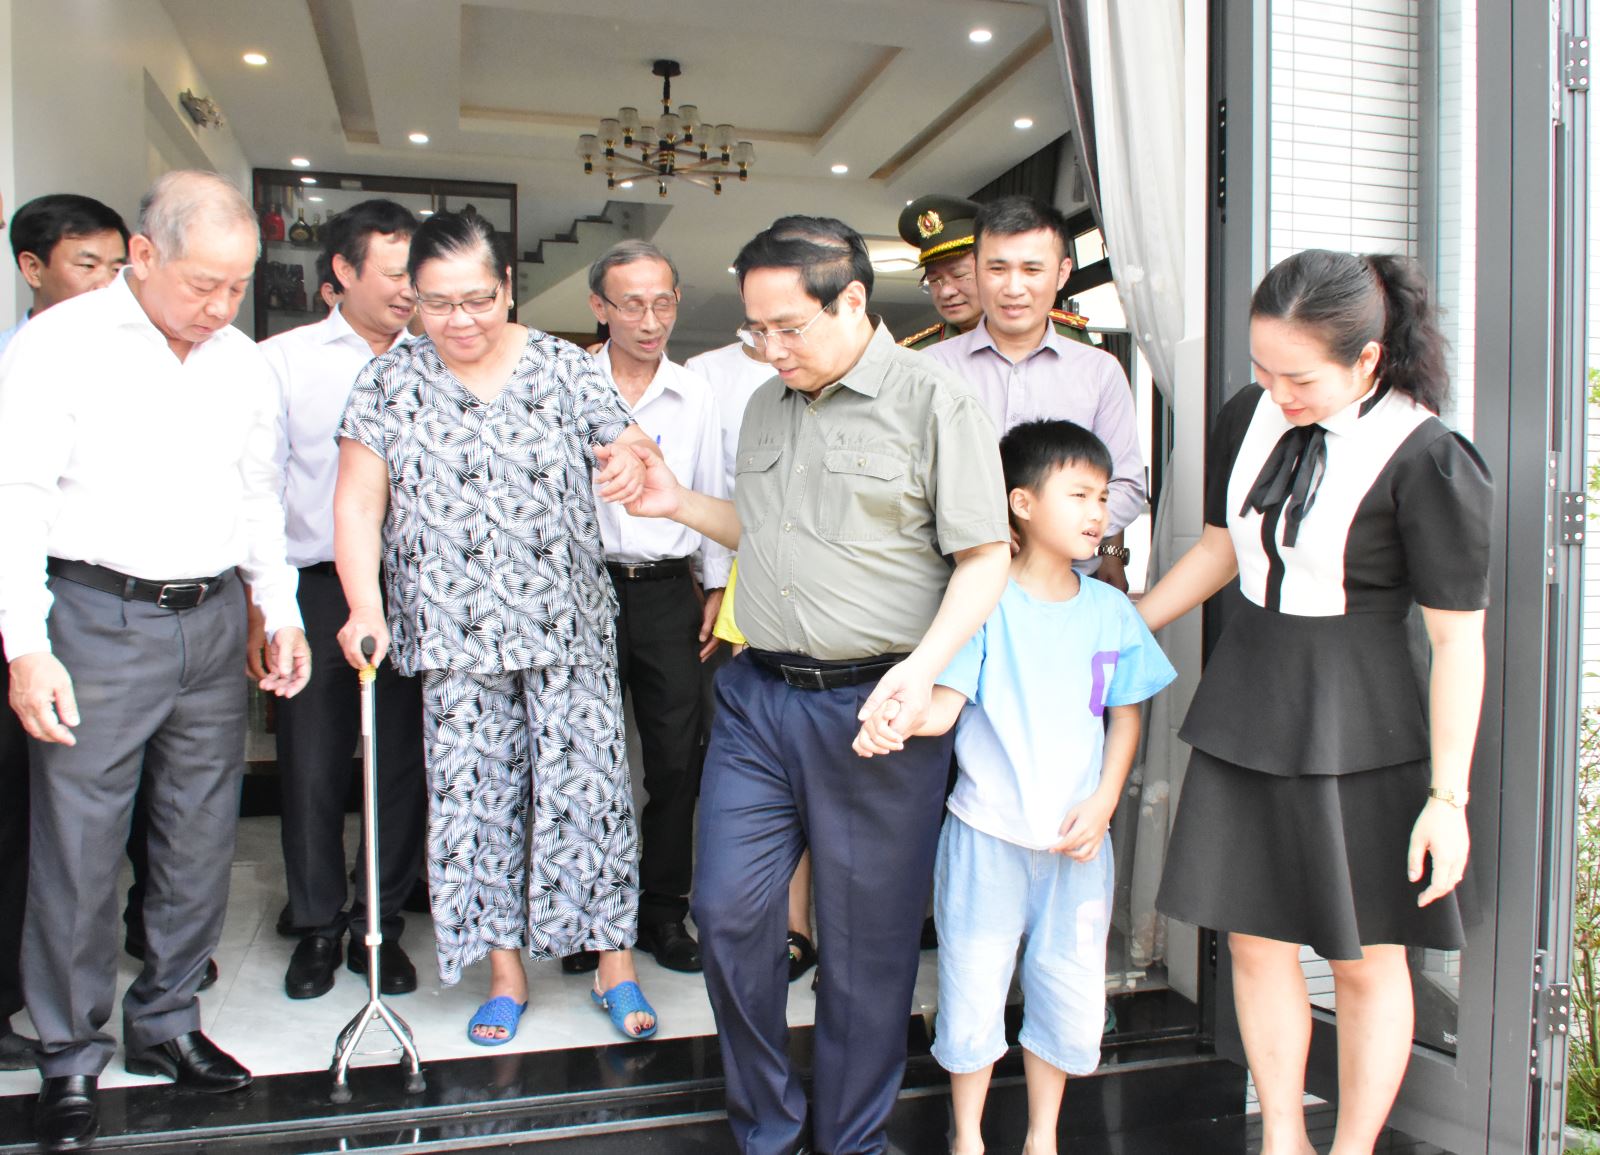 Thủ tướng Phạm Minh Chính yêu cầu chính quyền địa phương đảm bảo các mốc tiến độ đề ra, qua đó sớm hoàn thành dự án, trả lại nguyên trạng cho khu vực kinh thành Huế.